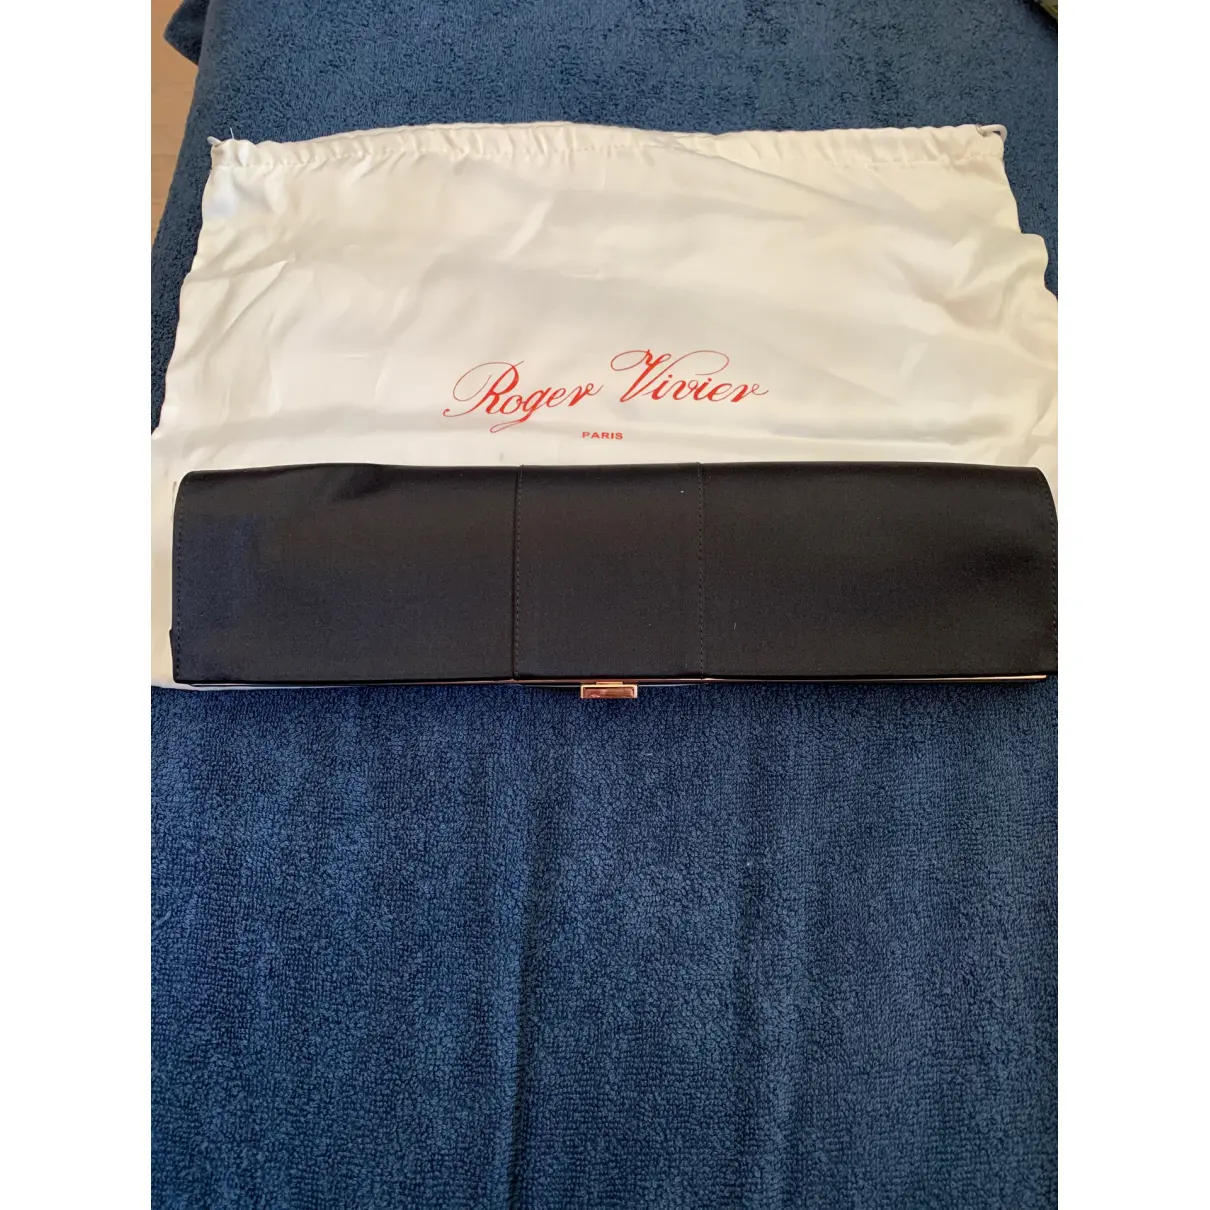 Buy Roger Vivier Silk mini bag online